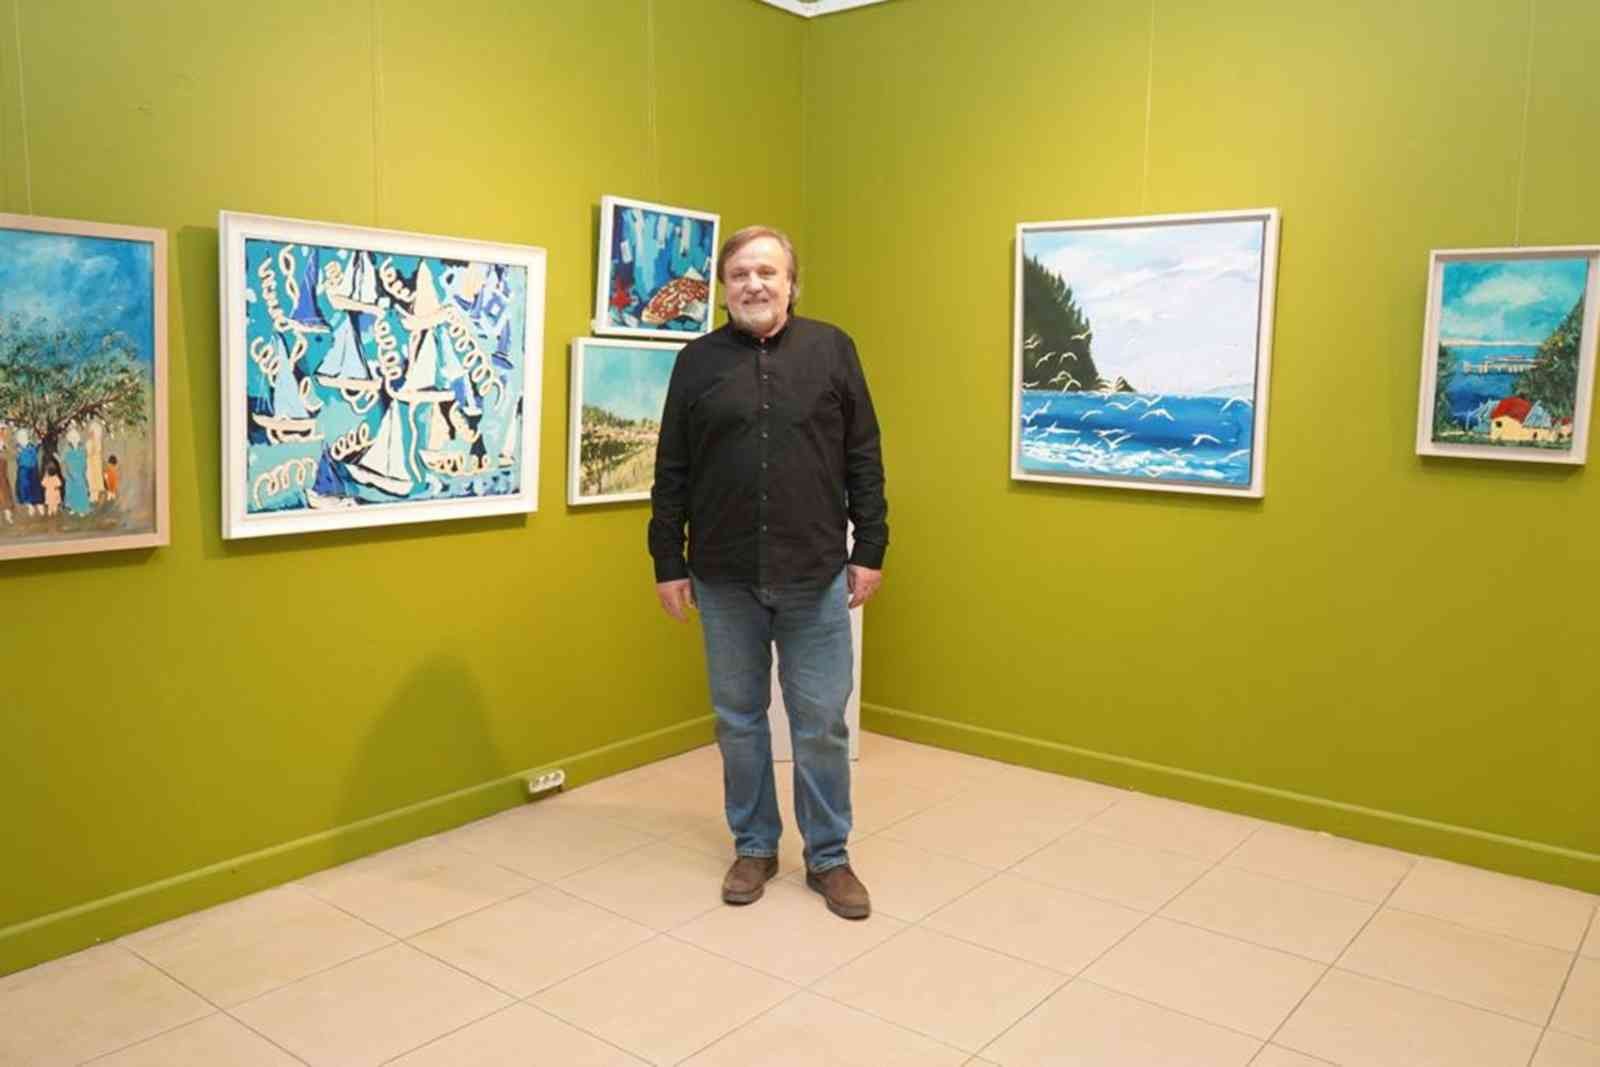 Ayvalık Belediyesi Sanat Galerisi Ressam Tayfun Önel’in “Renkler ve Lekeler” isimli resim sergisine ev sahipliği yapıyor. 8 Nisan akşamına kadar ...